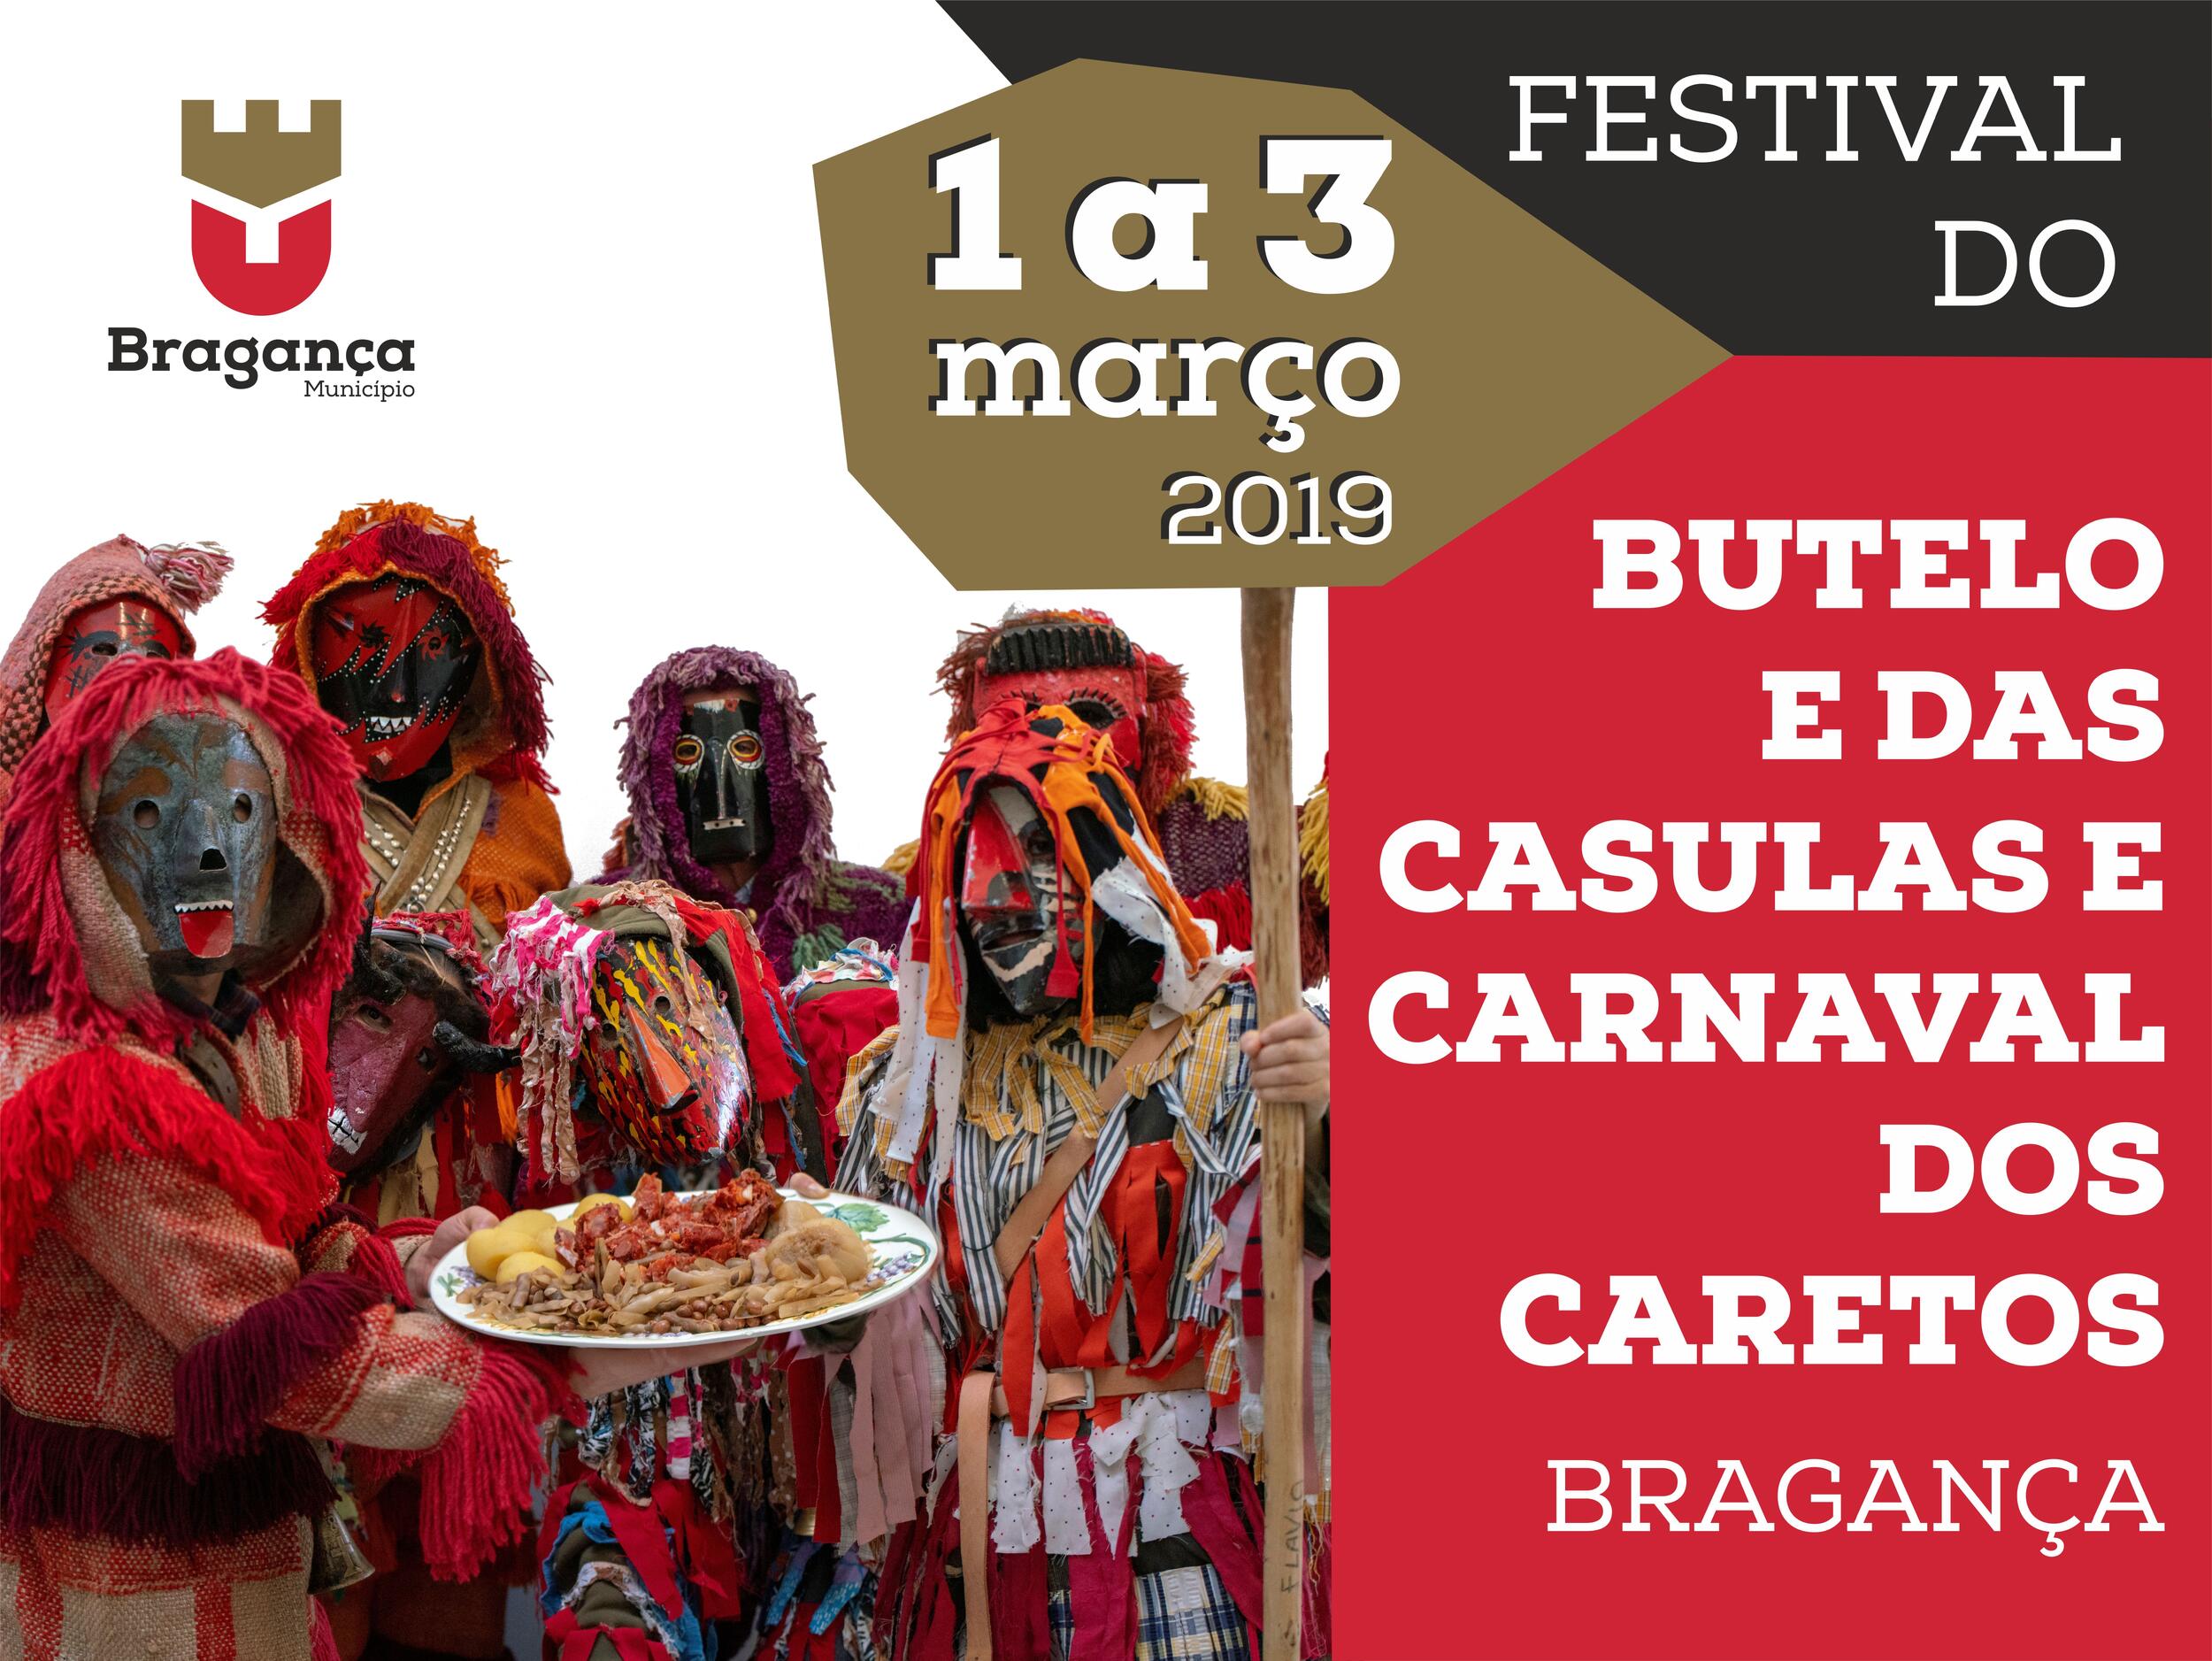 Festival do Butelo e das Casulas & Carnaval dos Caretos